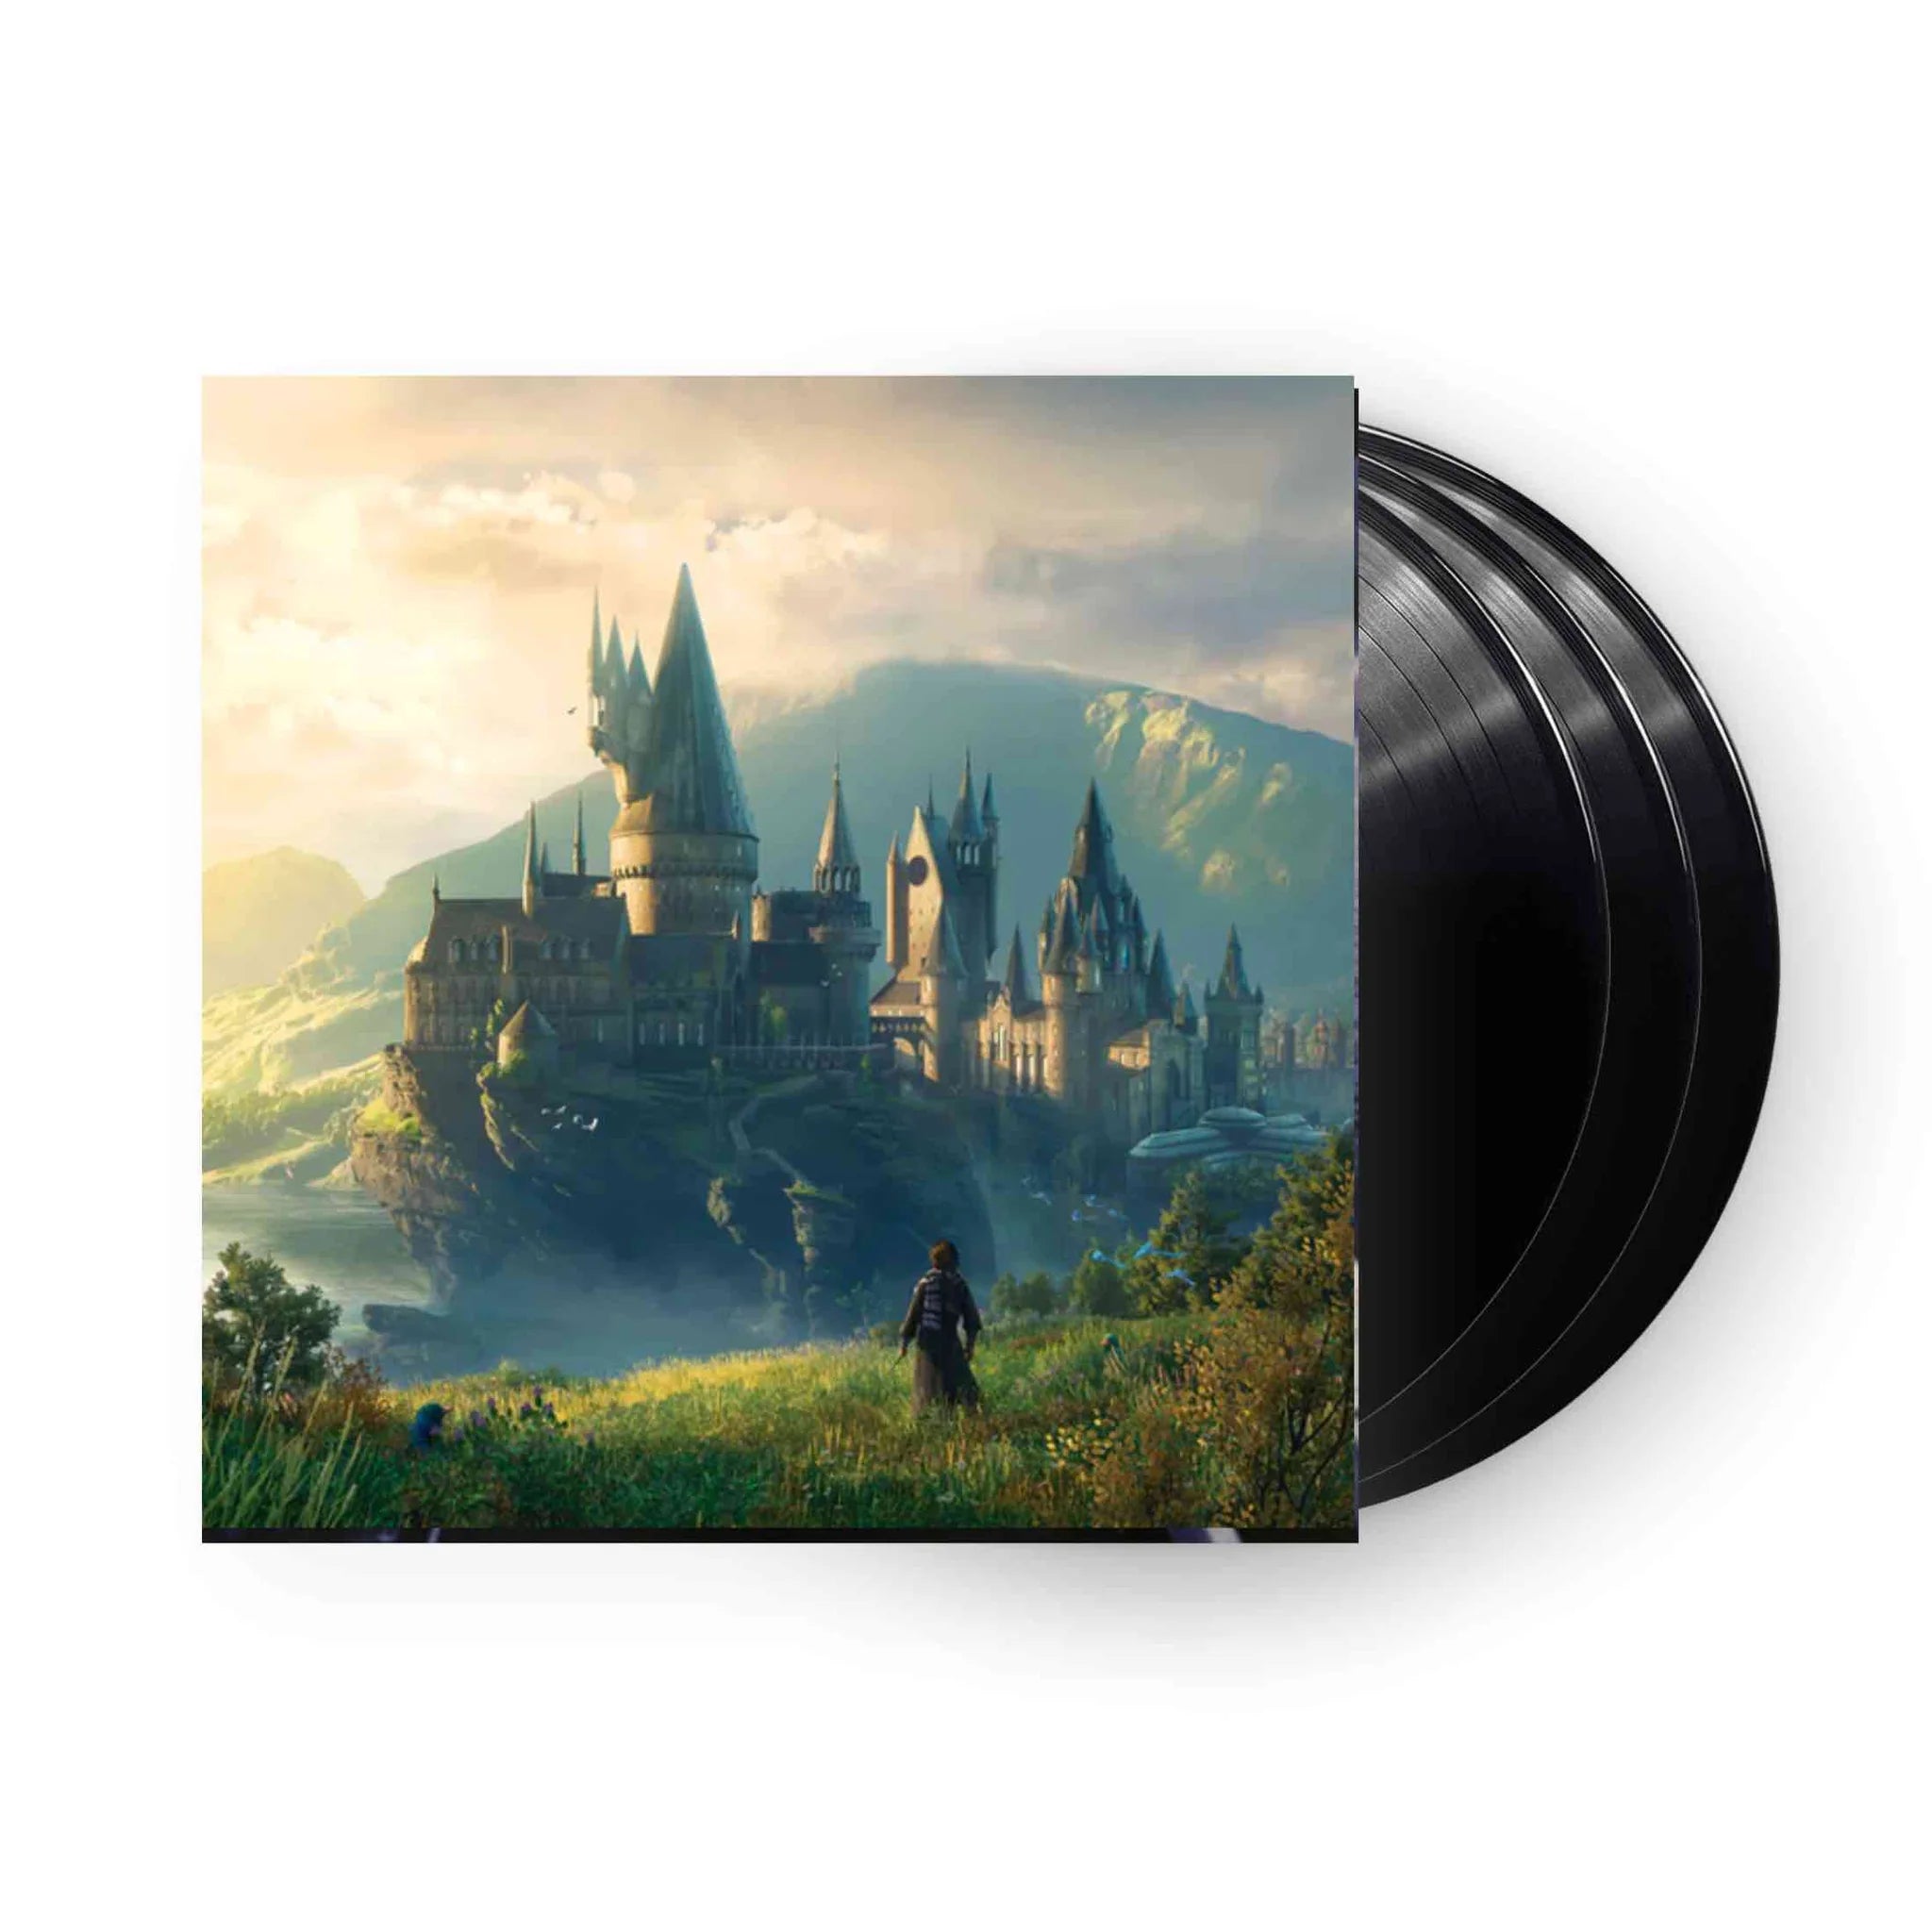 Vinyle Hogwarts Legacy Ost 3lp sur DIVERS, tous les jeux vidéo DIVERS sont  chez Micromania